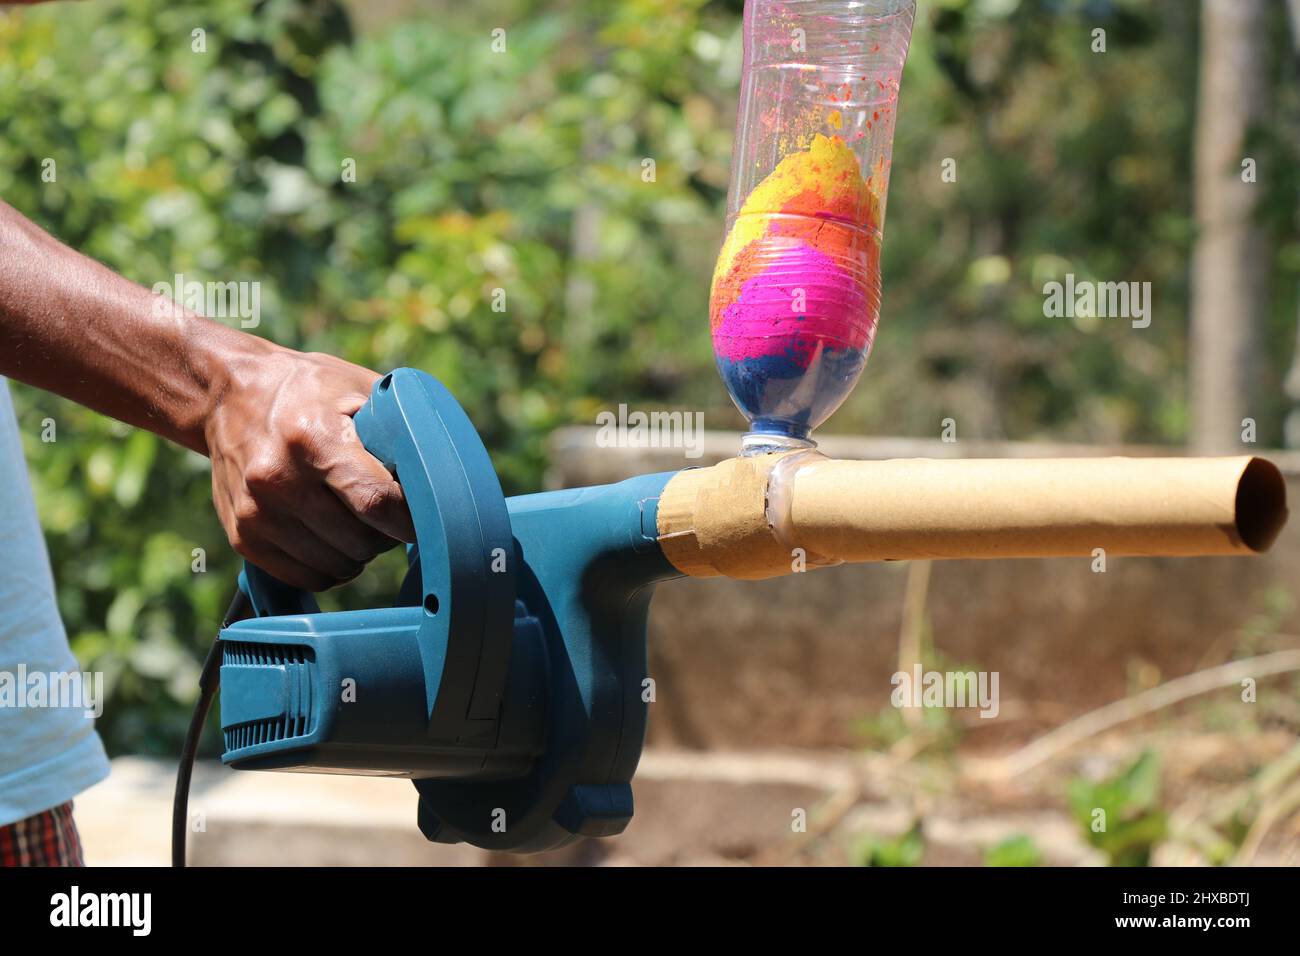 Hausgemachte Gulal Launcher, die ein weit verbreitetes Gadget für Holi Festival Feier in Indien ist. Gulal bedeutet Farbpulver, das in Holi verwendet wird Stockfoto